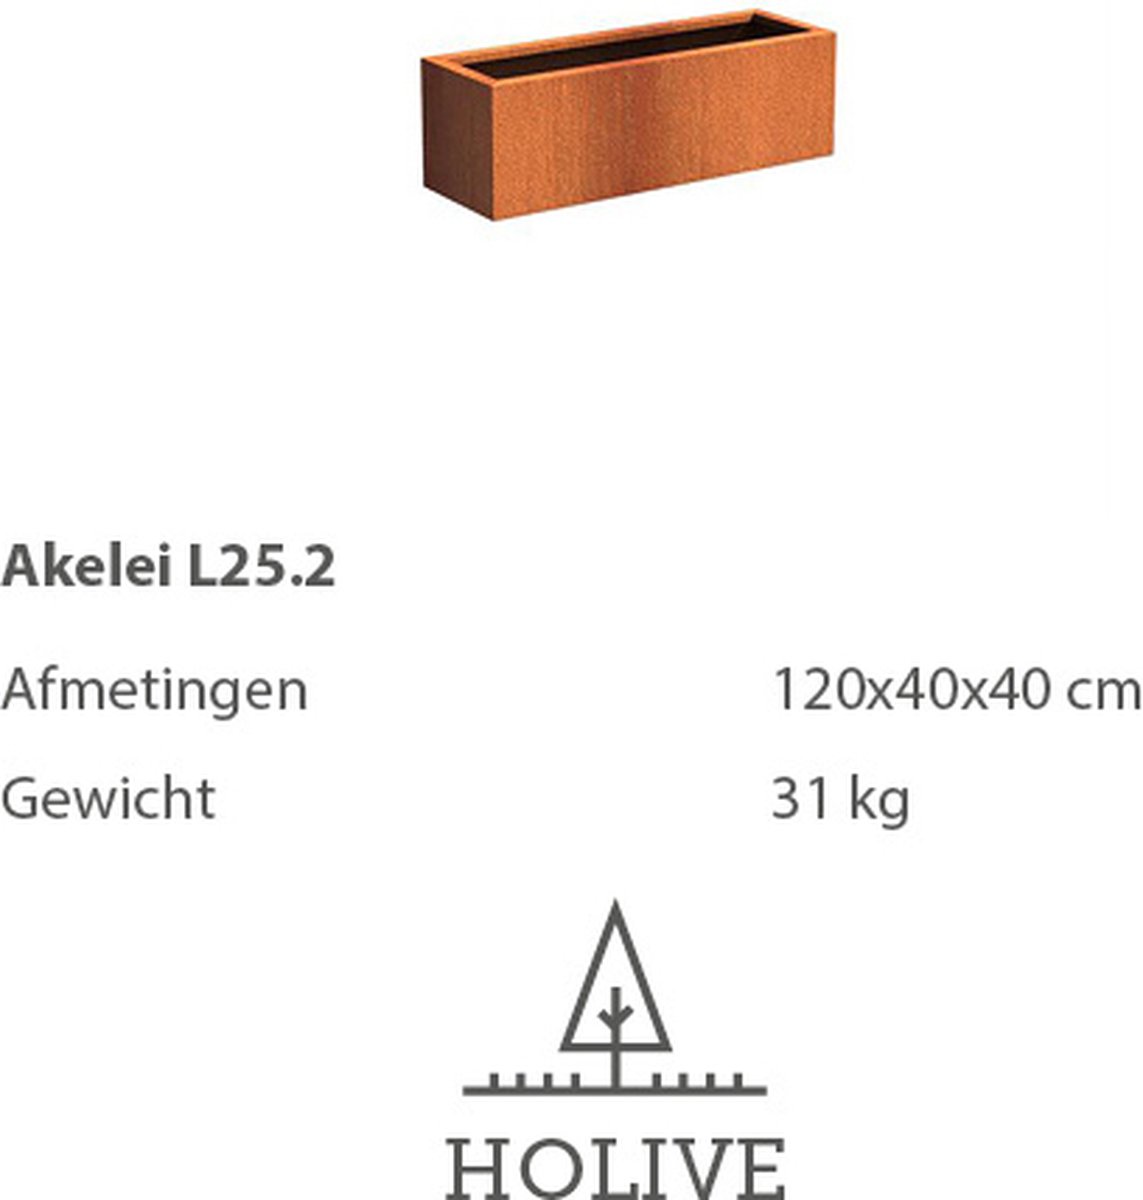 Cortenstaal Akelei L25.2 Rechthoek 120x40x40 cm. Plantenbak